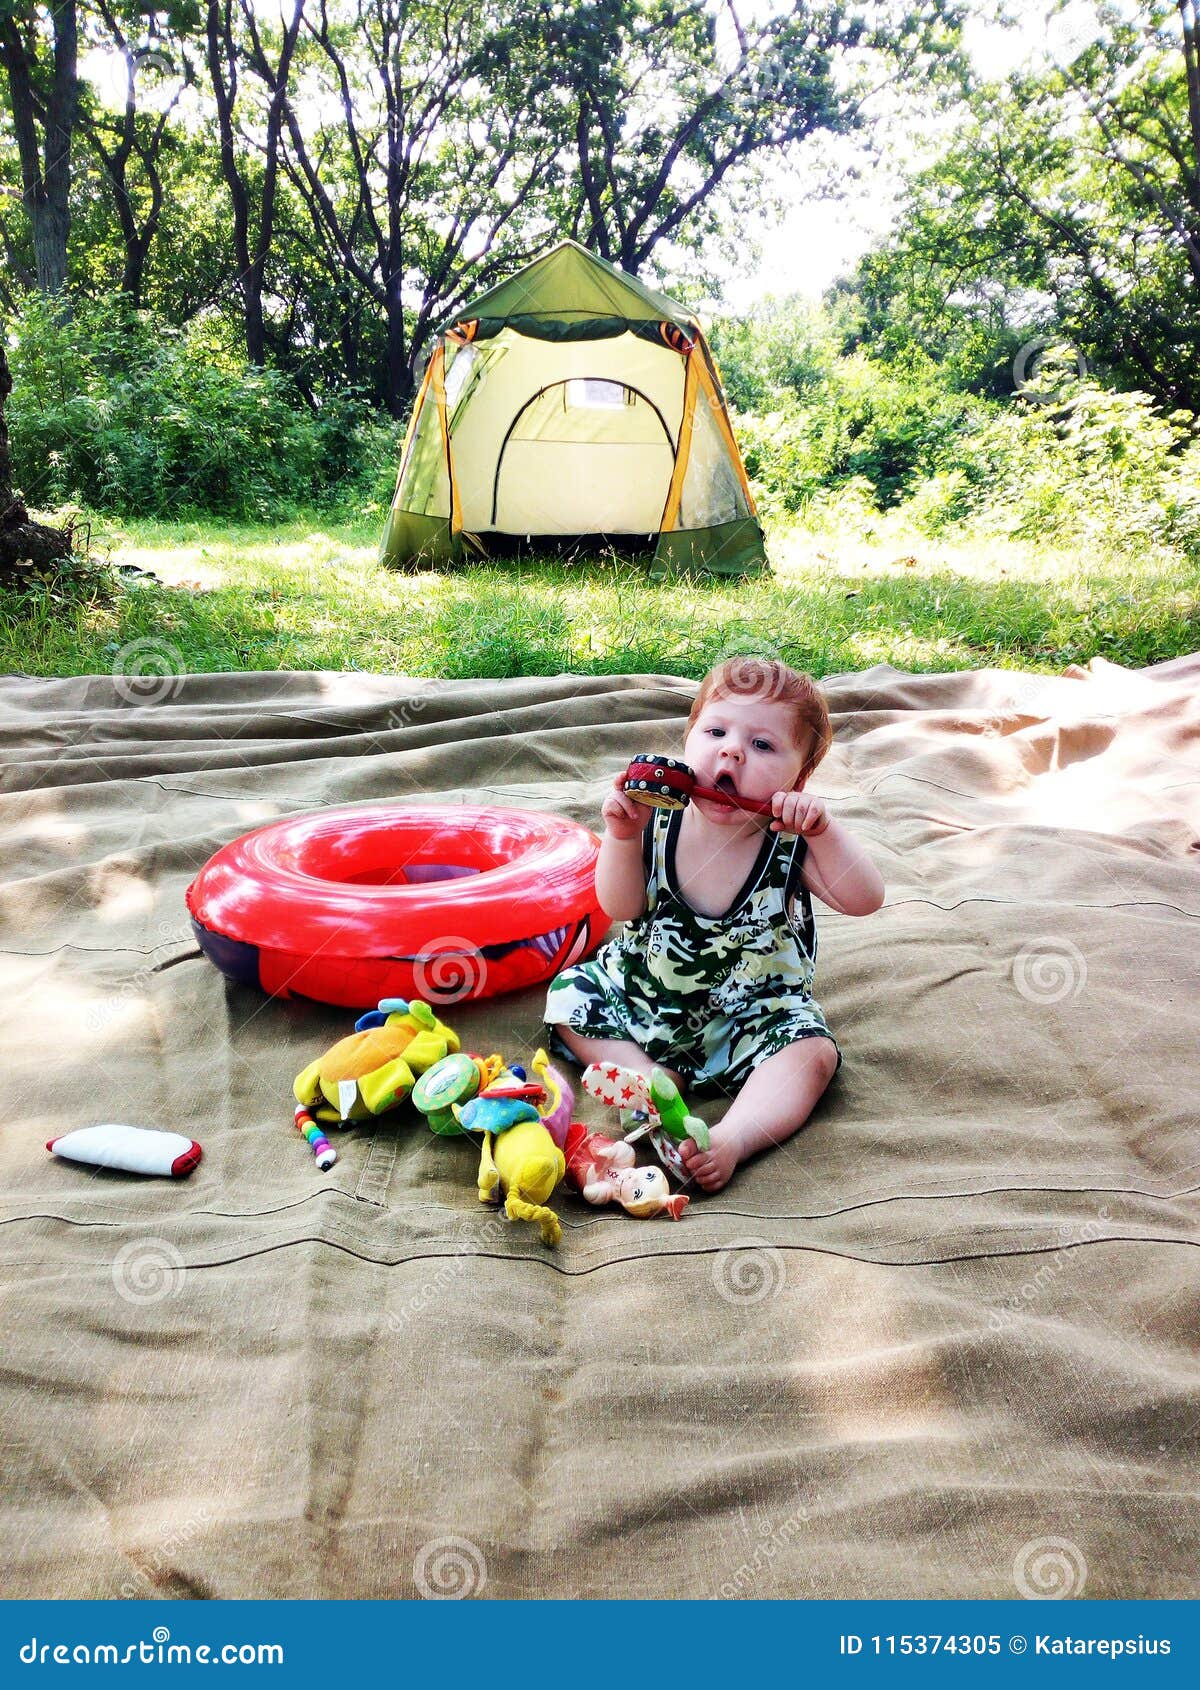 Bébé Garçon Avec Des Jouets Se Reposant à L'endroit De Camping Près De La  Tente Image stock - Image du camping, nature: 115374305